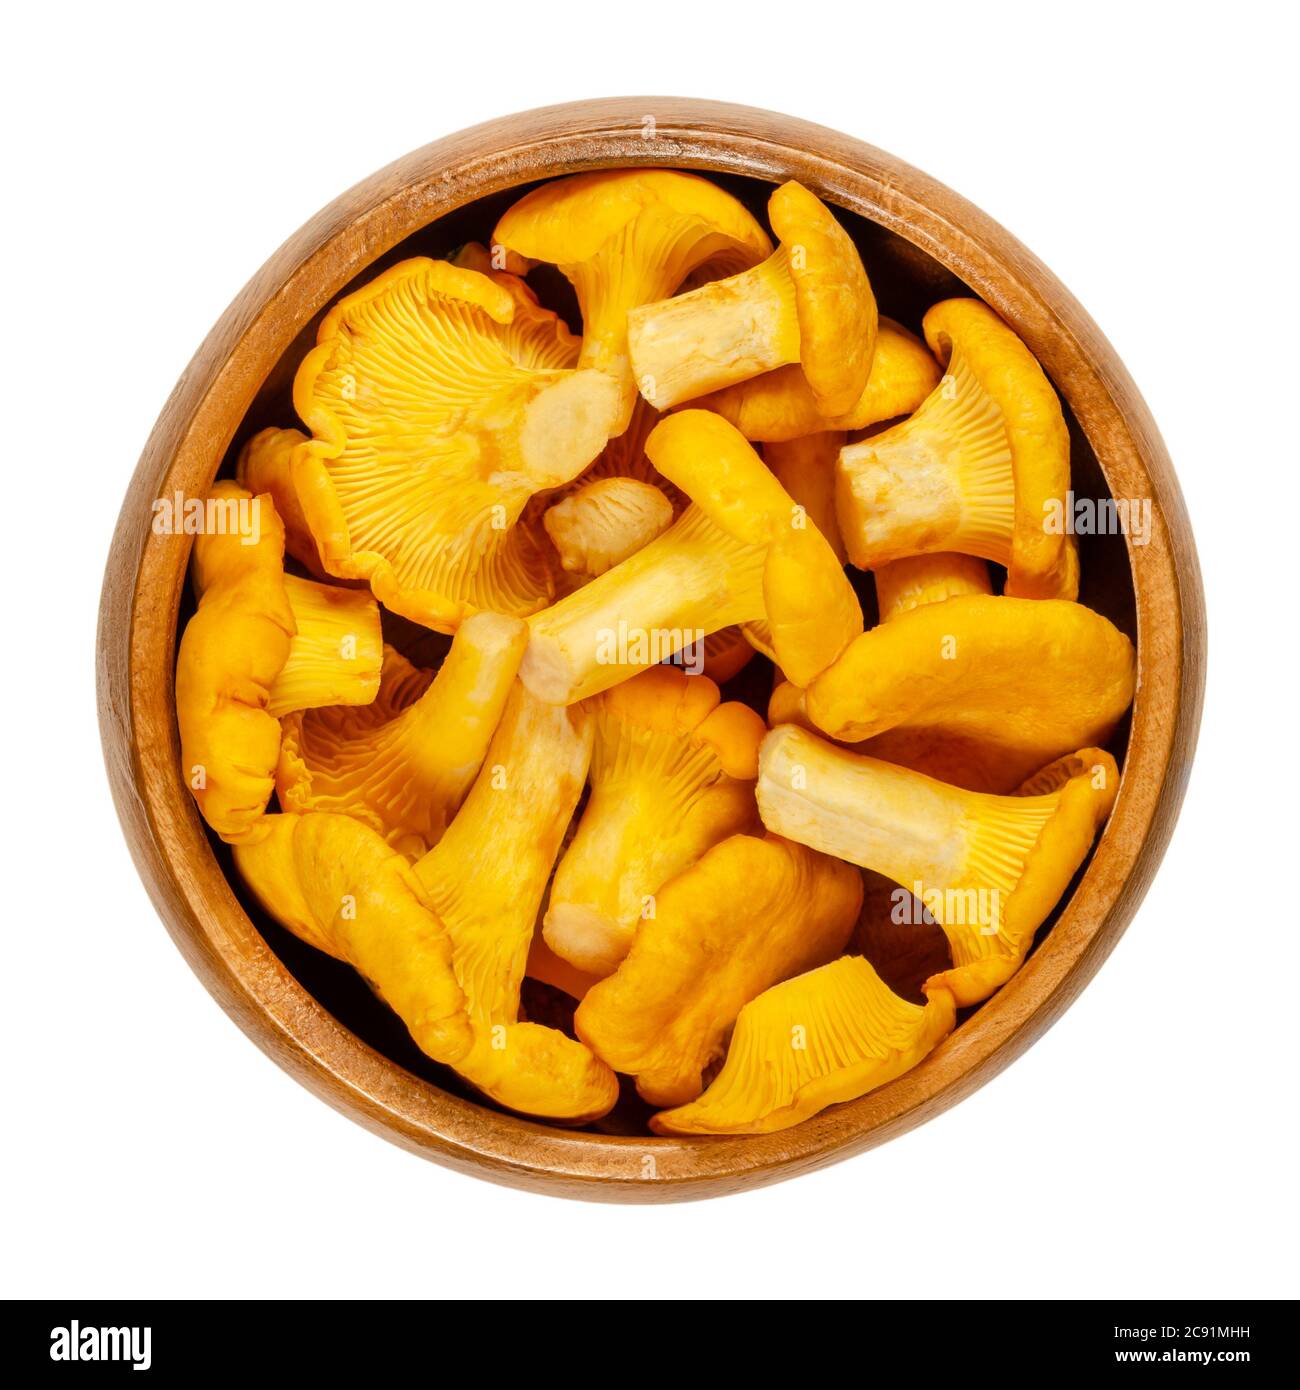 Frische Pfifferlinge in einer Holzschüssel. Cantharellus, beliebte essbare Pilze mit intensiver gelber Farbe. Einer der bekanntesten und geernteten Pilze. Stockfoto